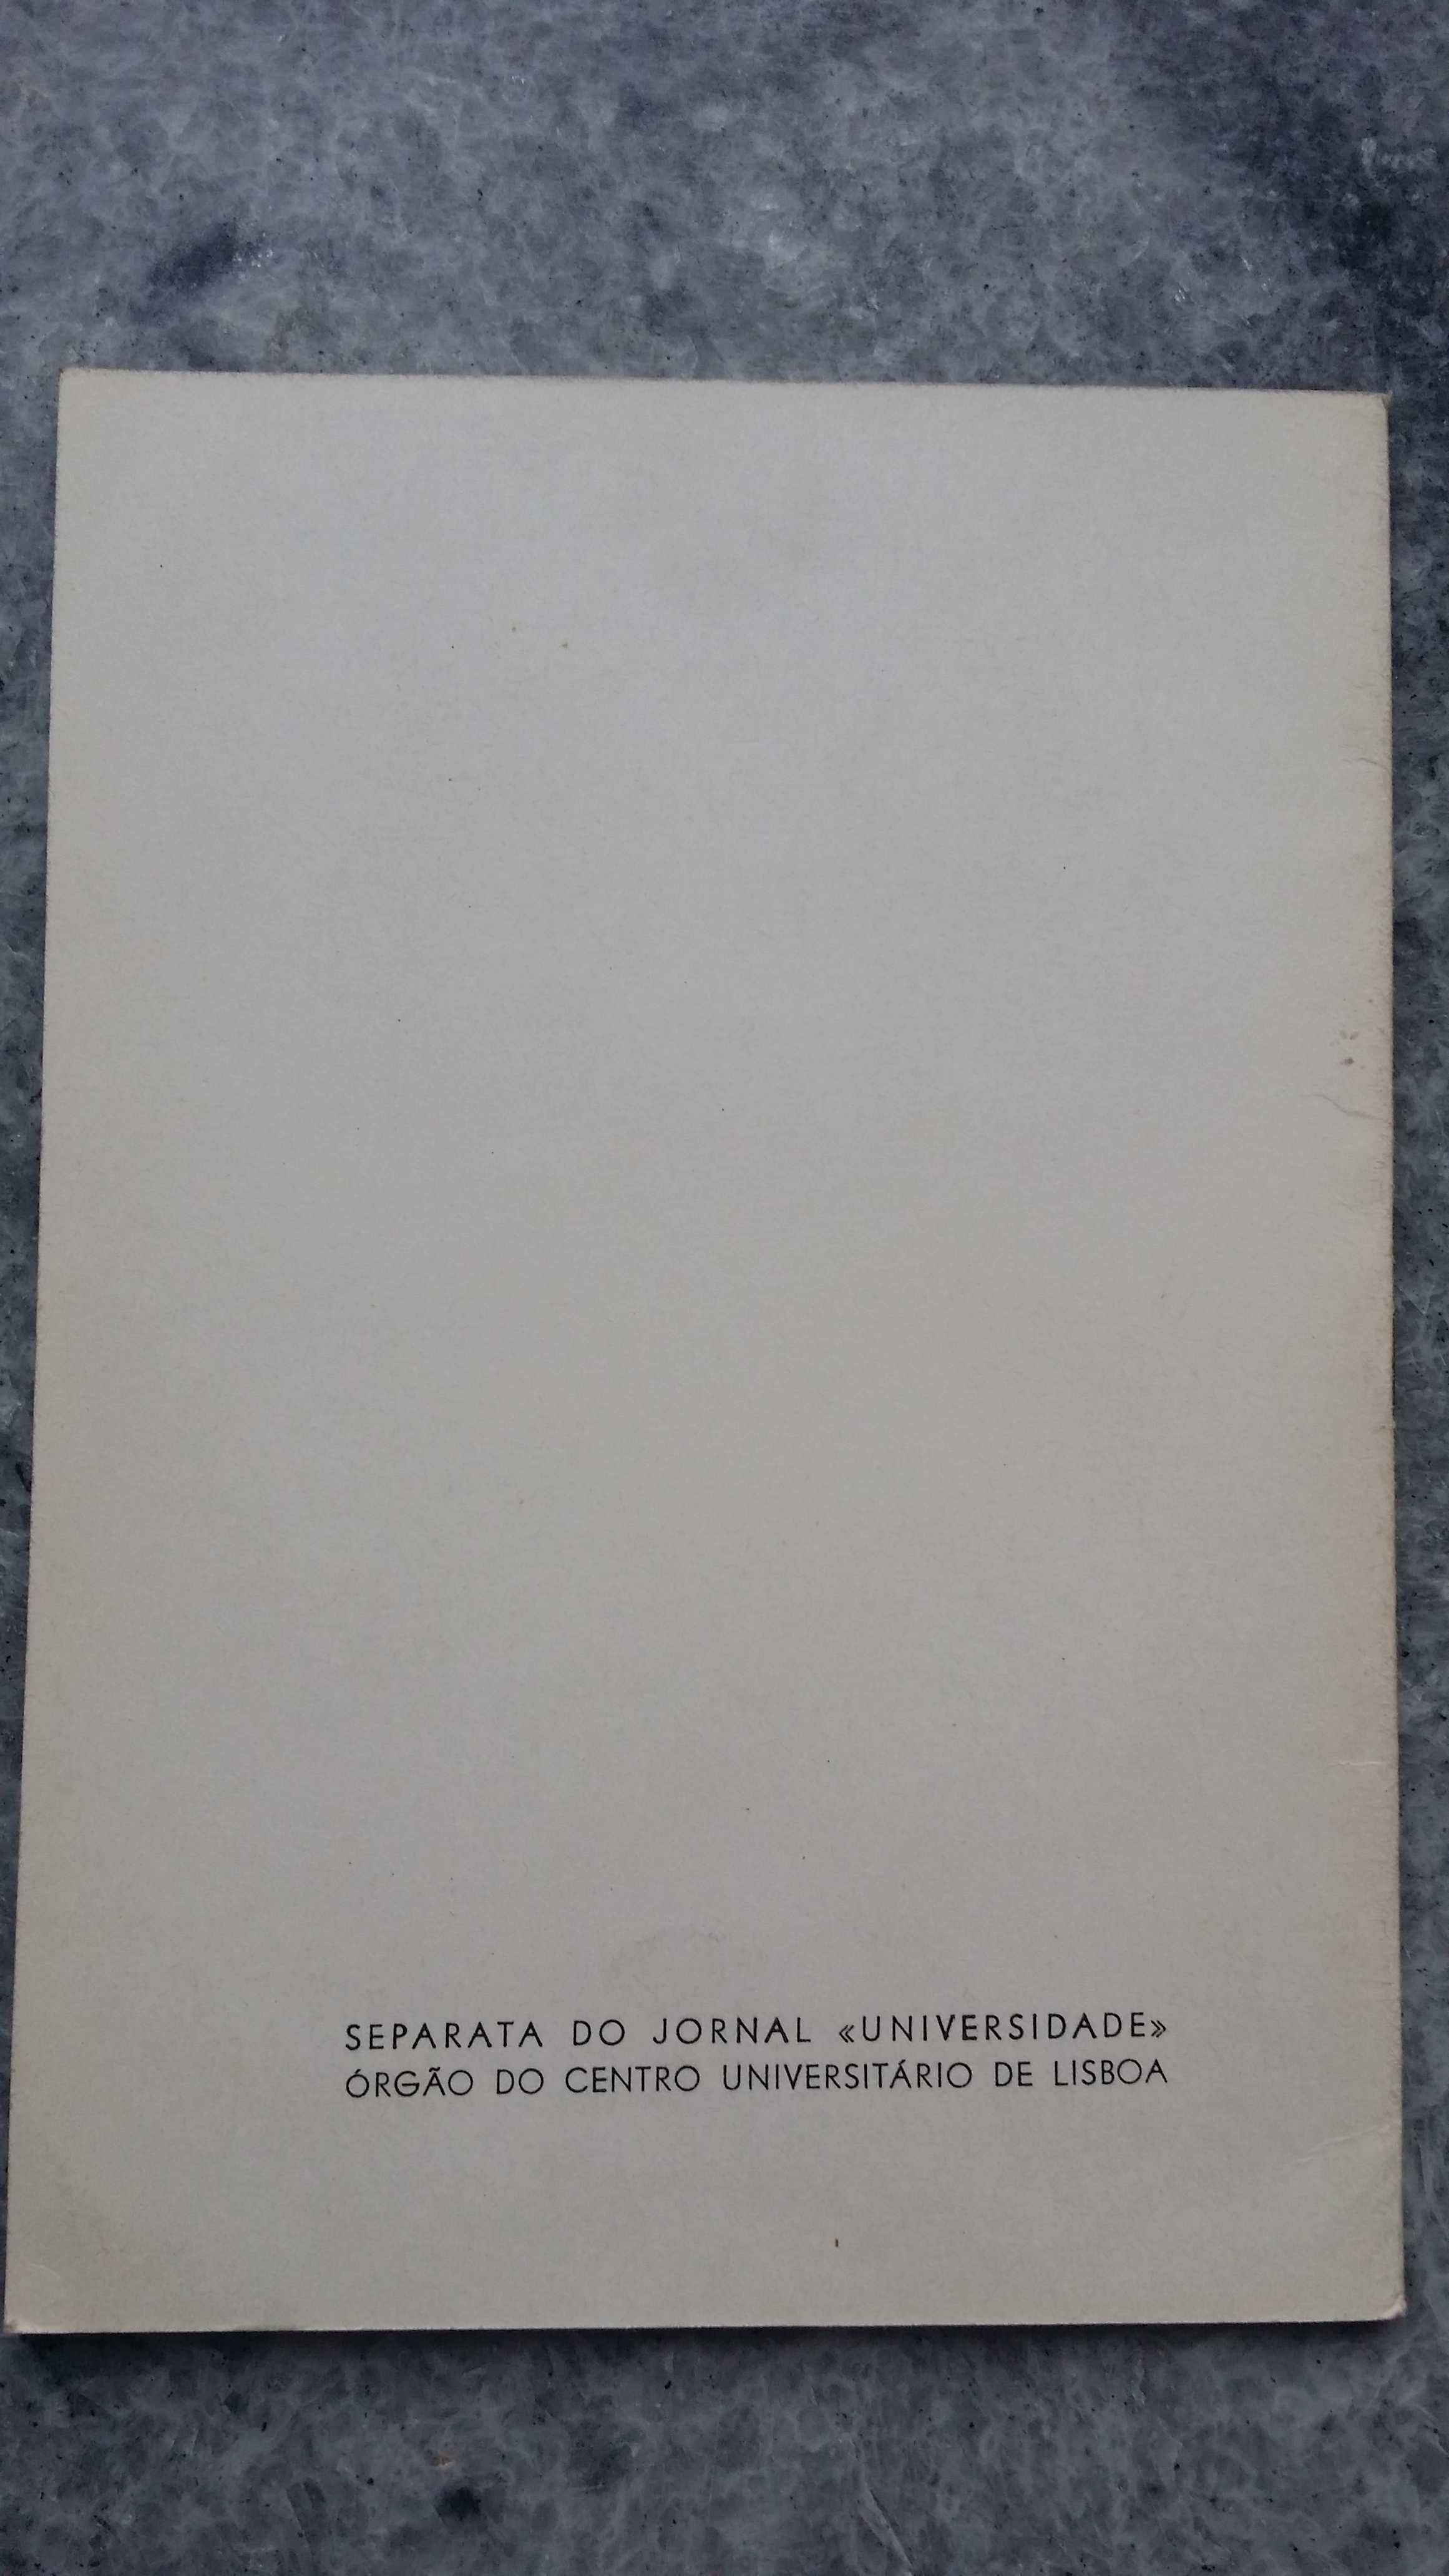 Livro folheto separata "Apontamentos sobre o mal estar académico" 1965